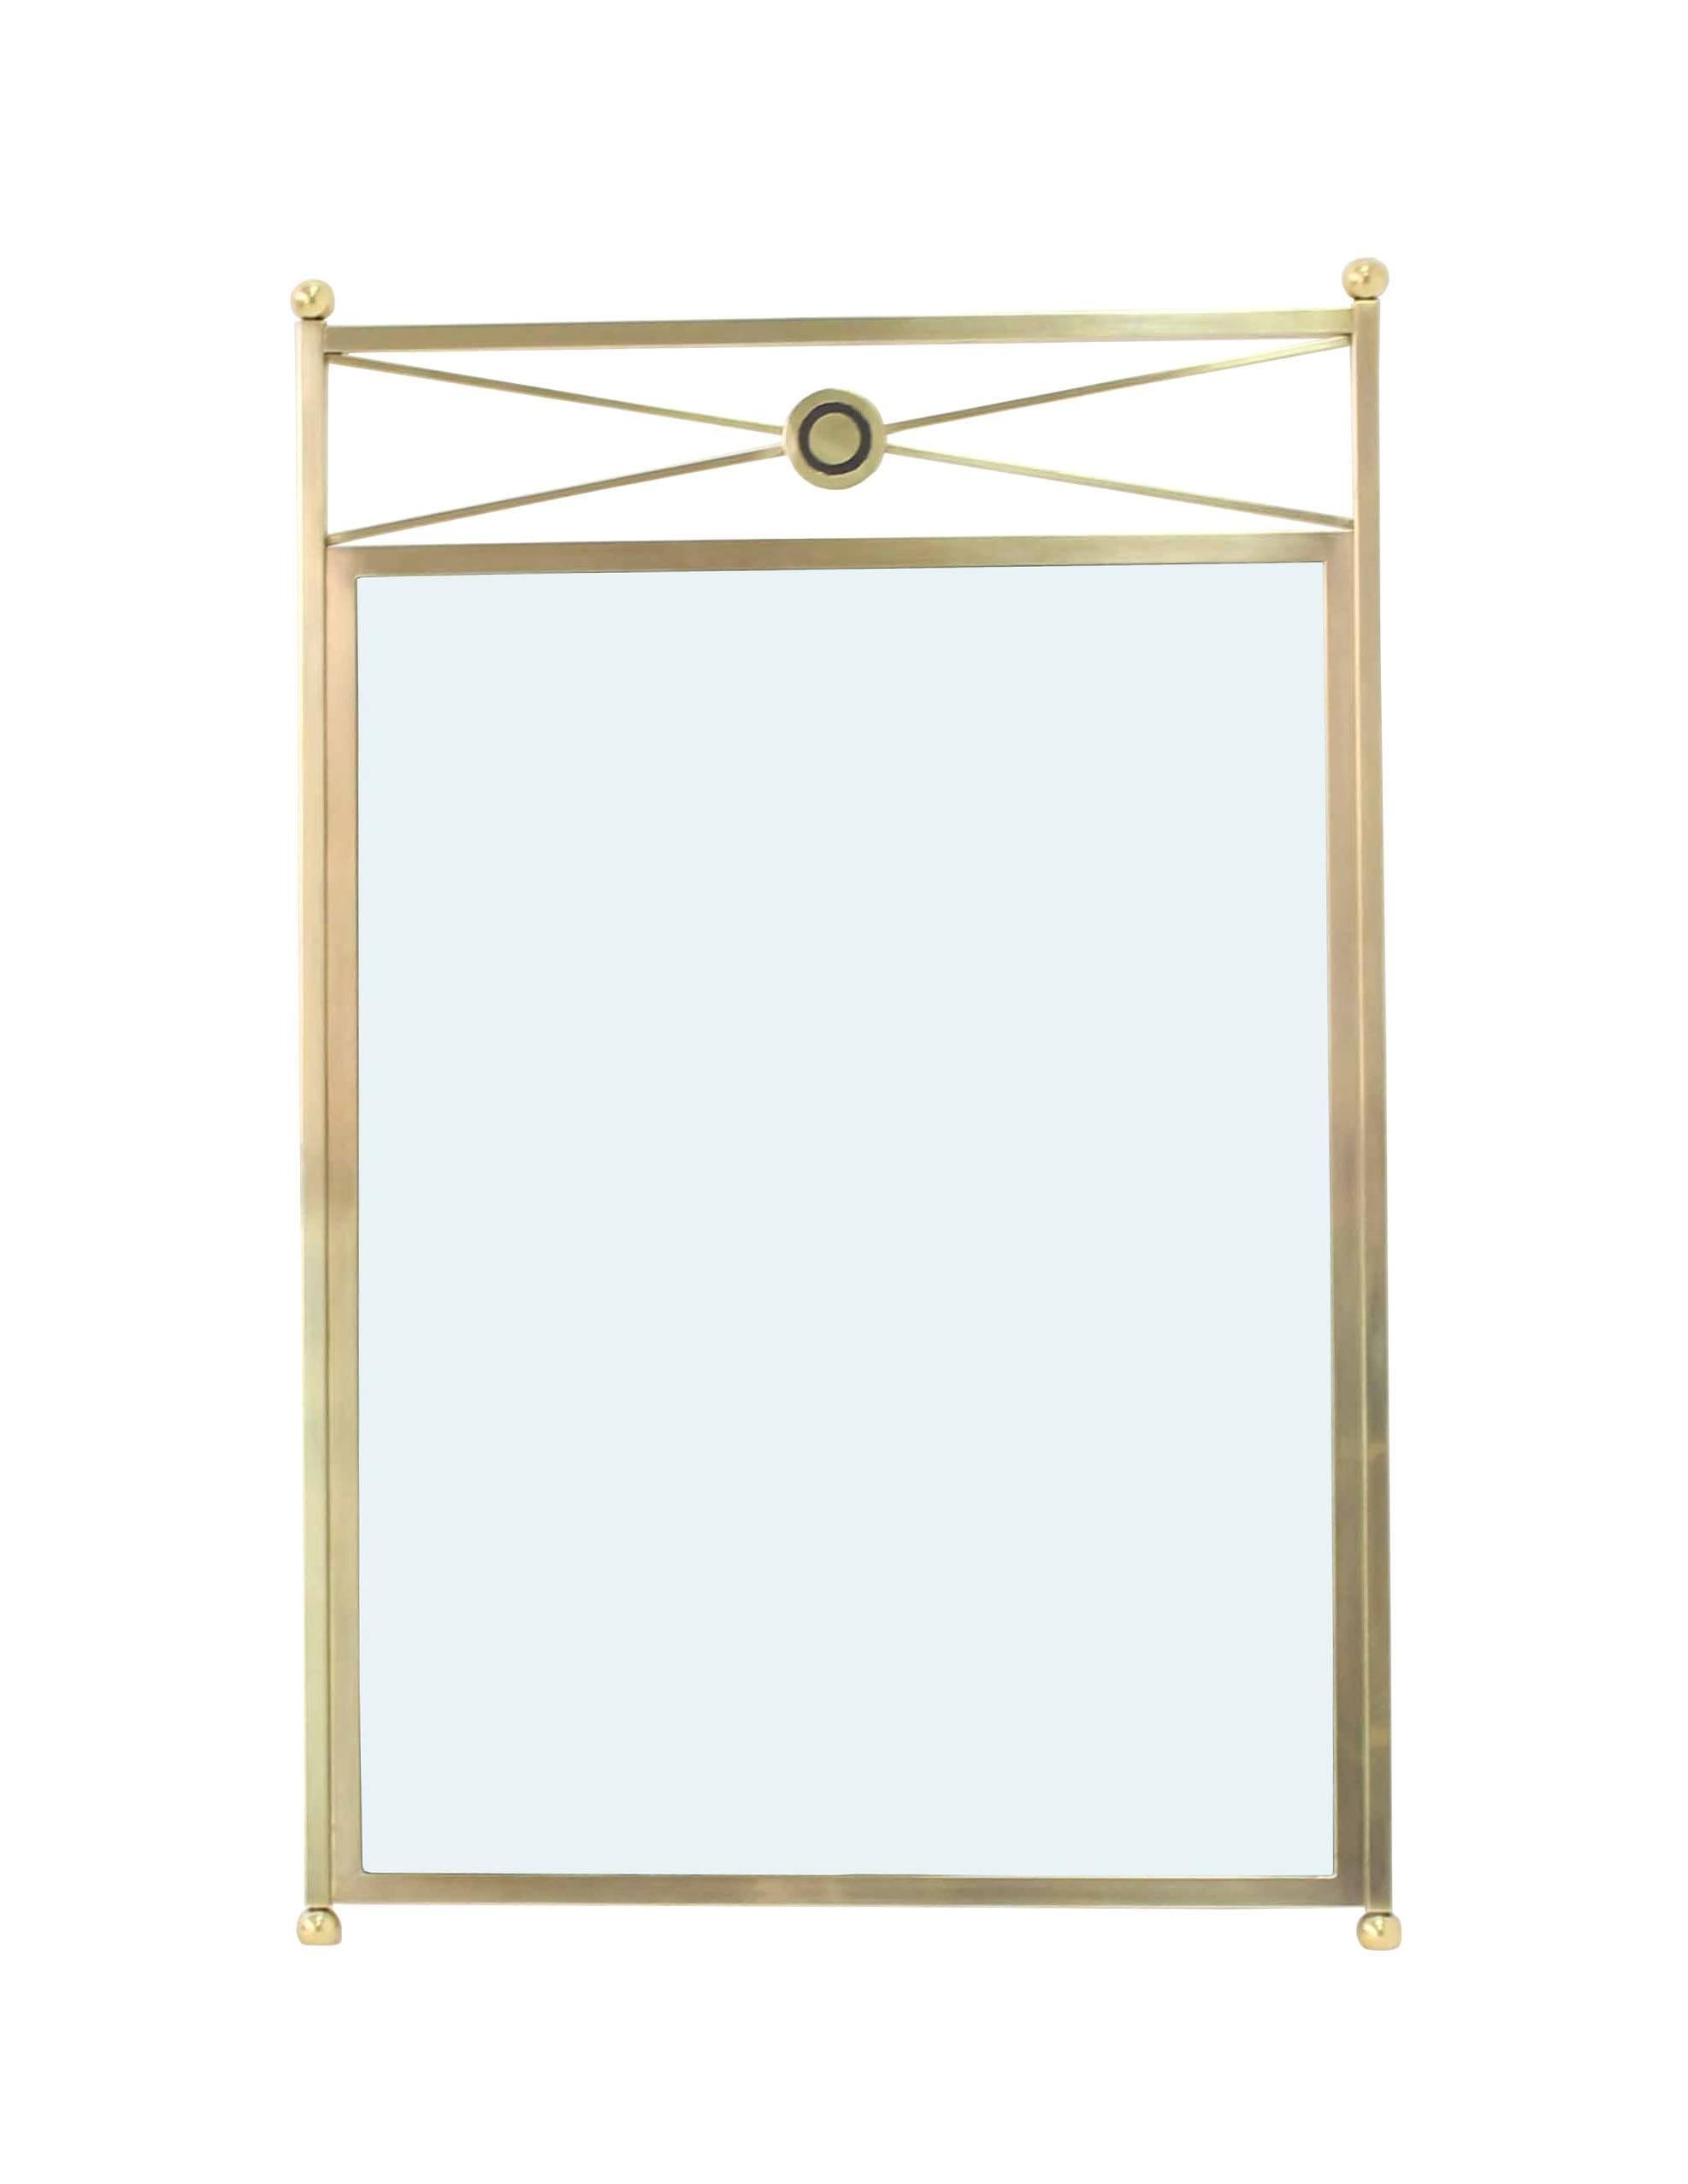 Solid Brass Frame Mirror 1